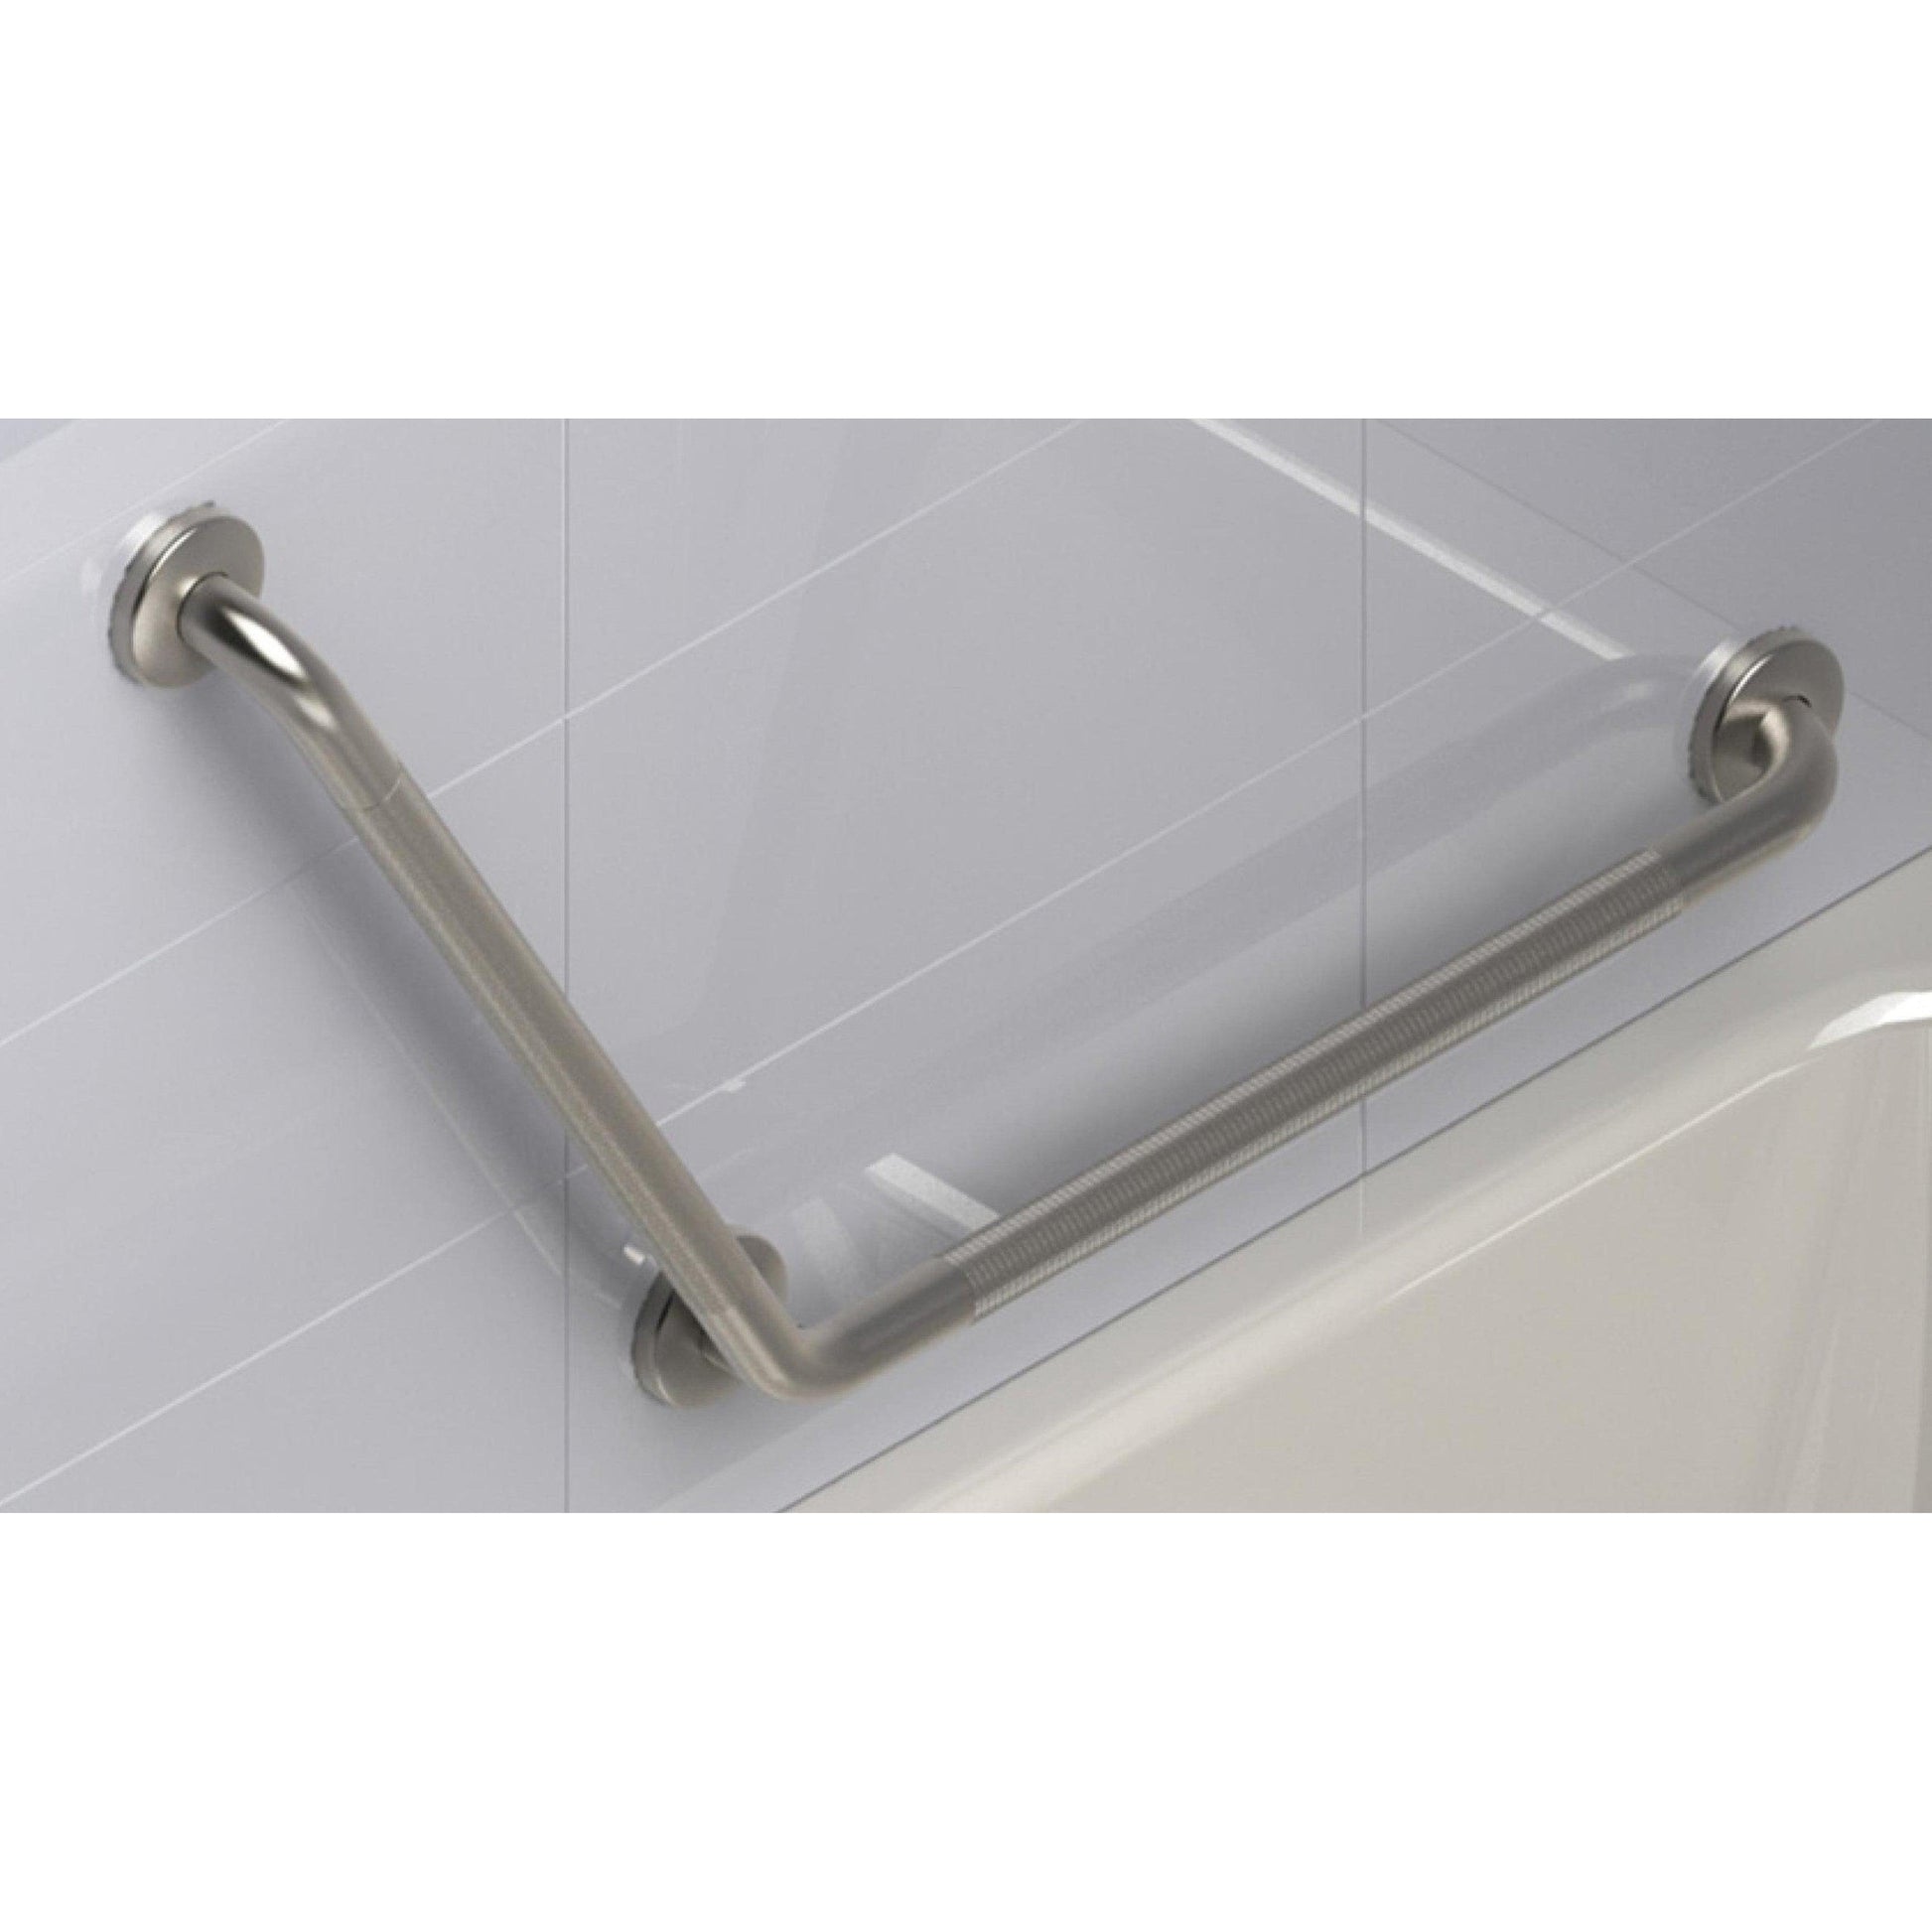 Safe-er-Grip-bathtub and shower grab bar handles - Elder Shoppe